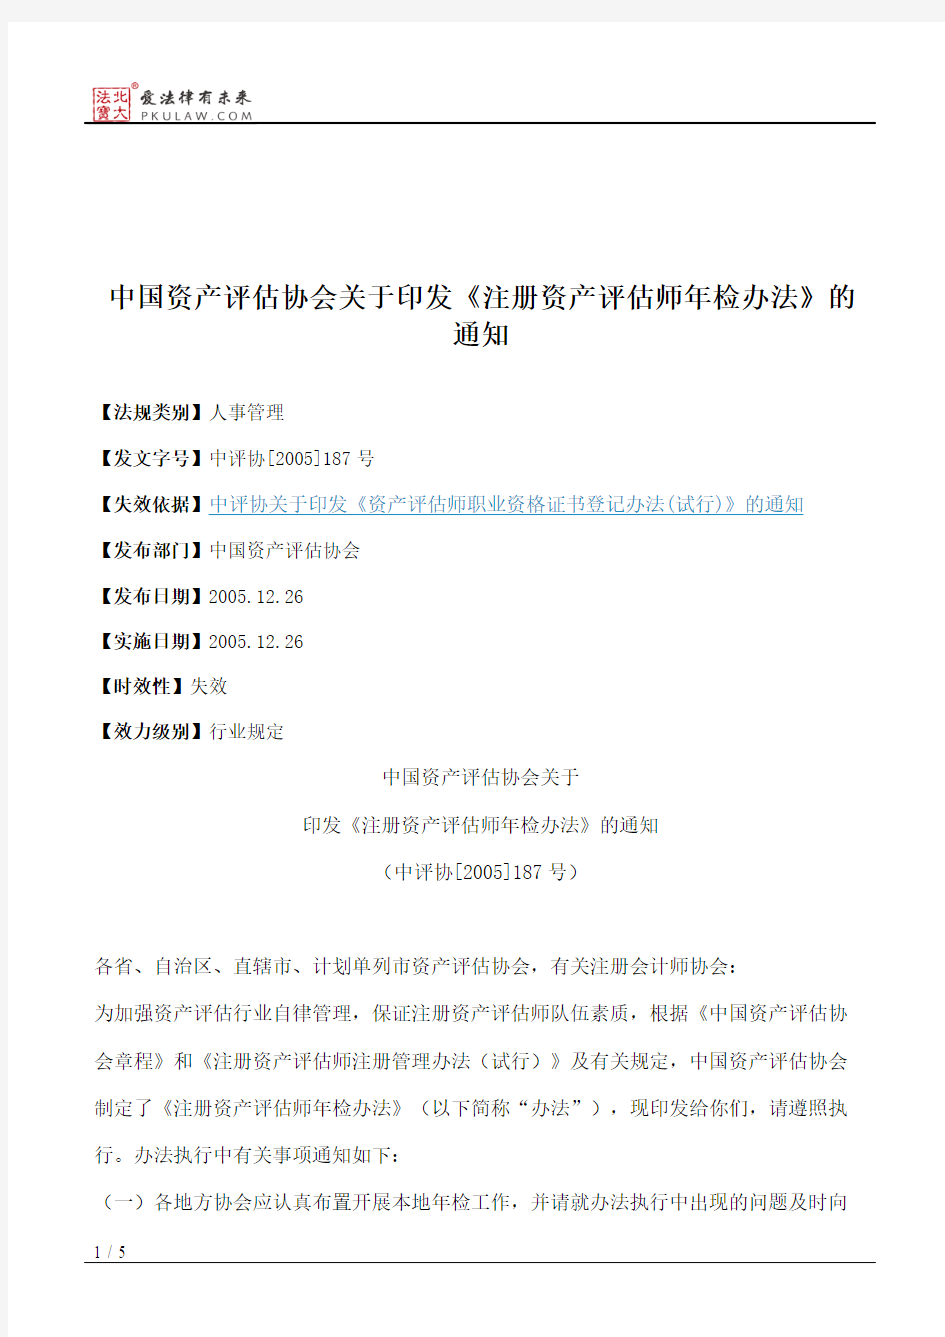 中国资产评估协会关于印发《注册资产评估师年检办法》的通知